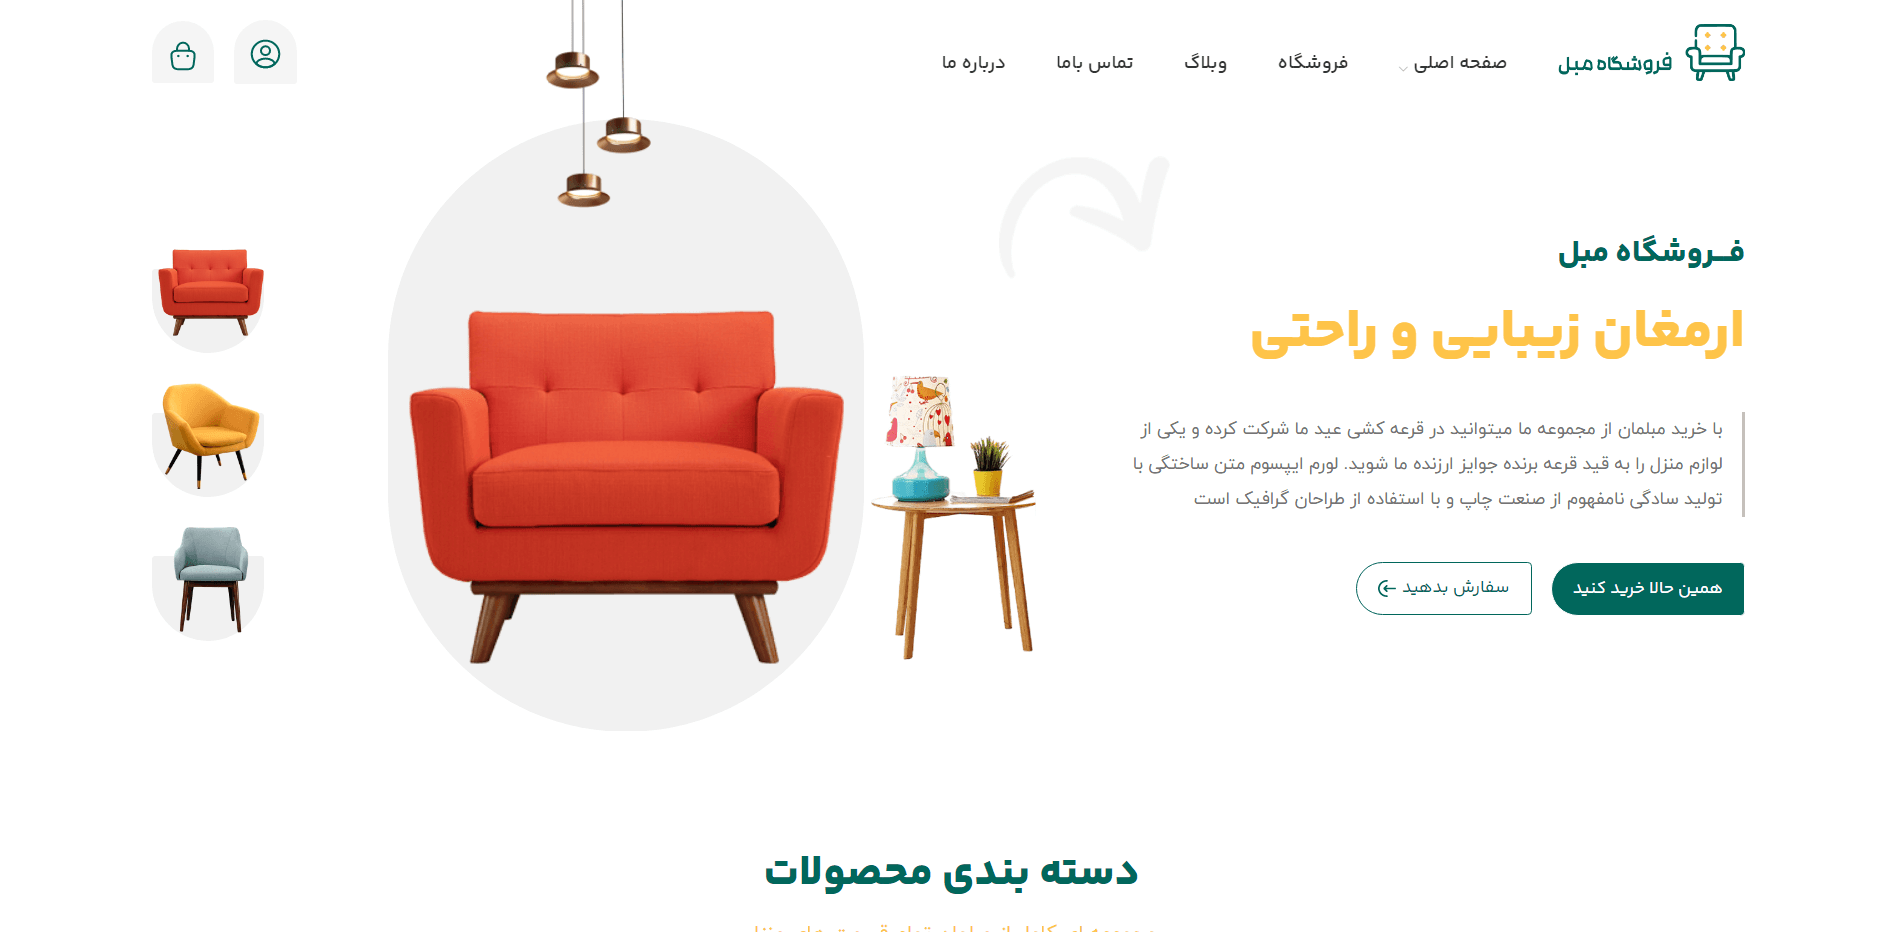 furniture main page 2 - نمونه وب سایت های زیبا و جذاب برای طراحی